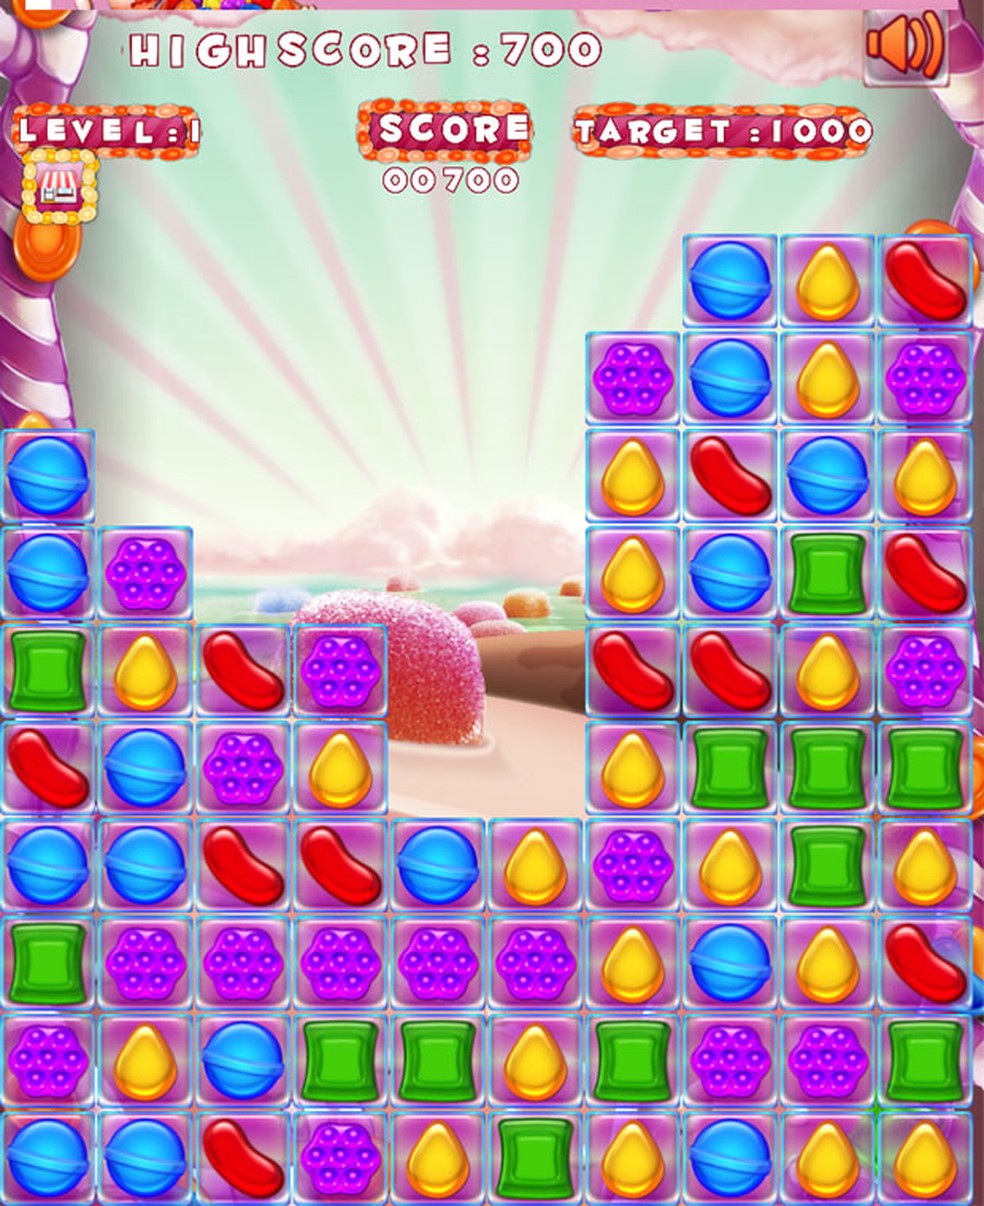 O Candy Crush foi atualizado e agora é ainda mais doce e viciante -  Android - SAPO Tek